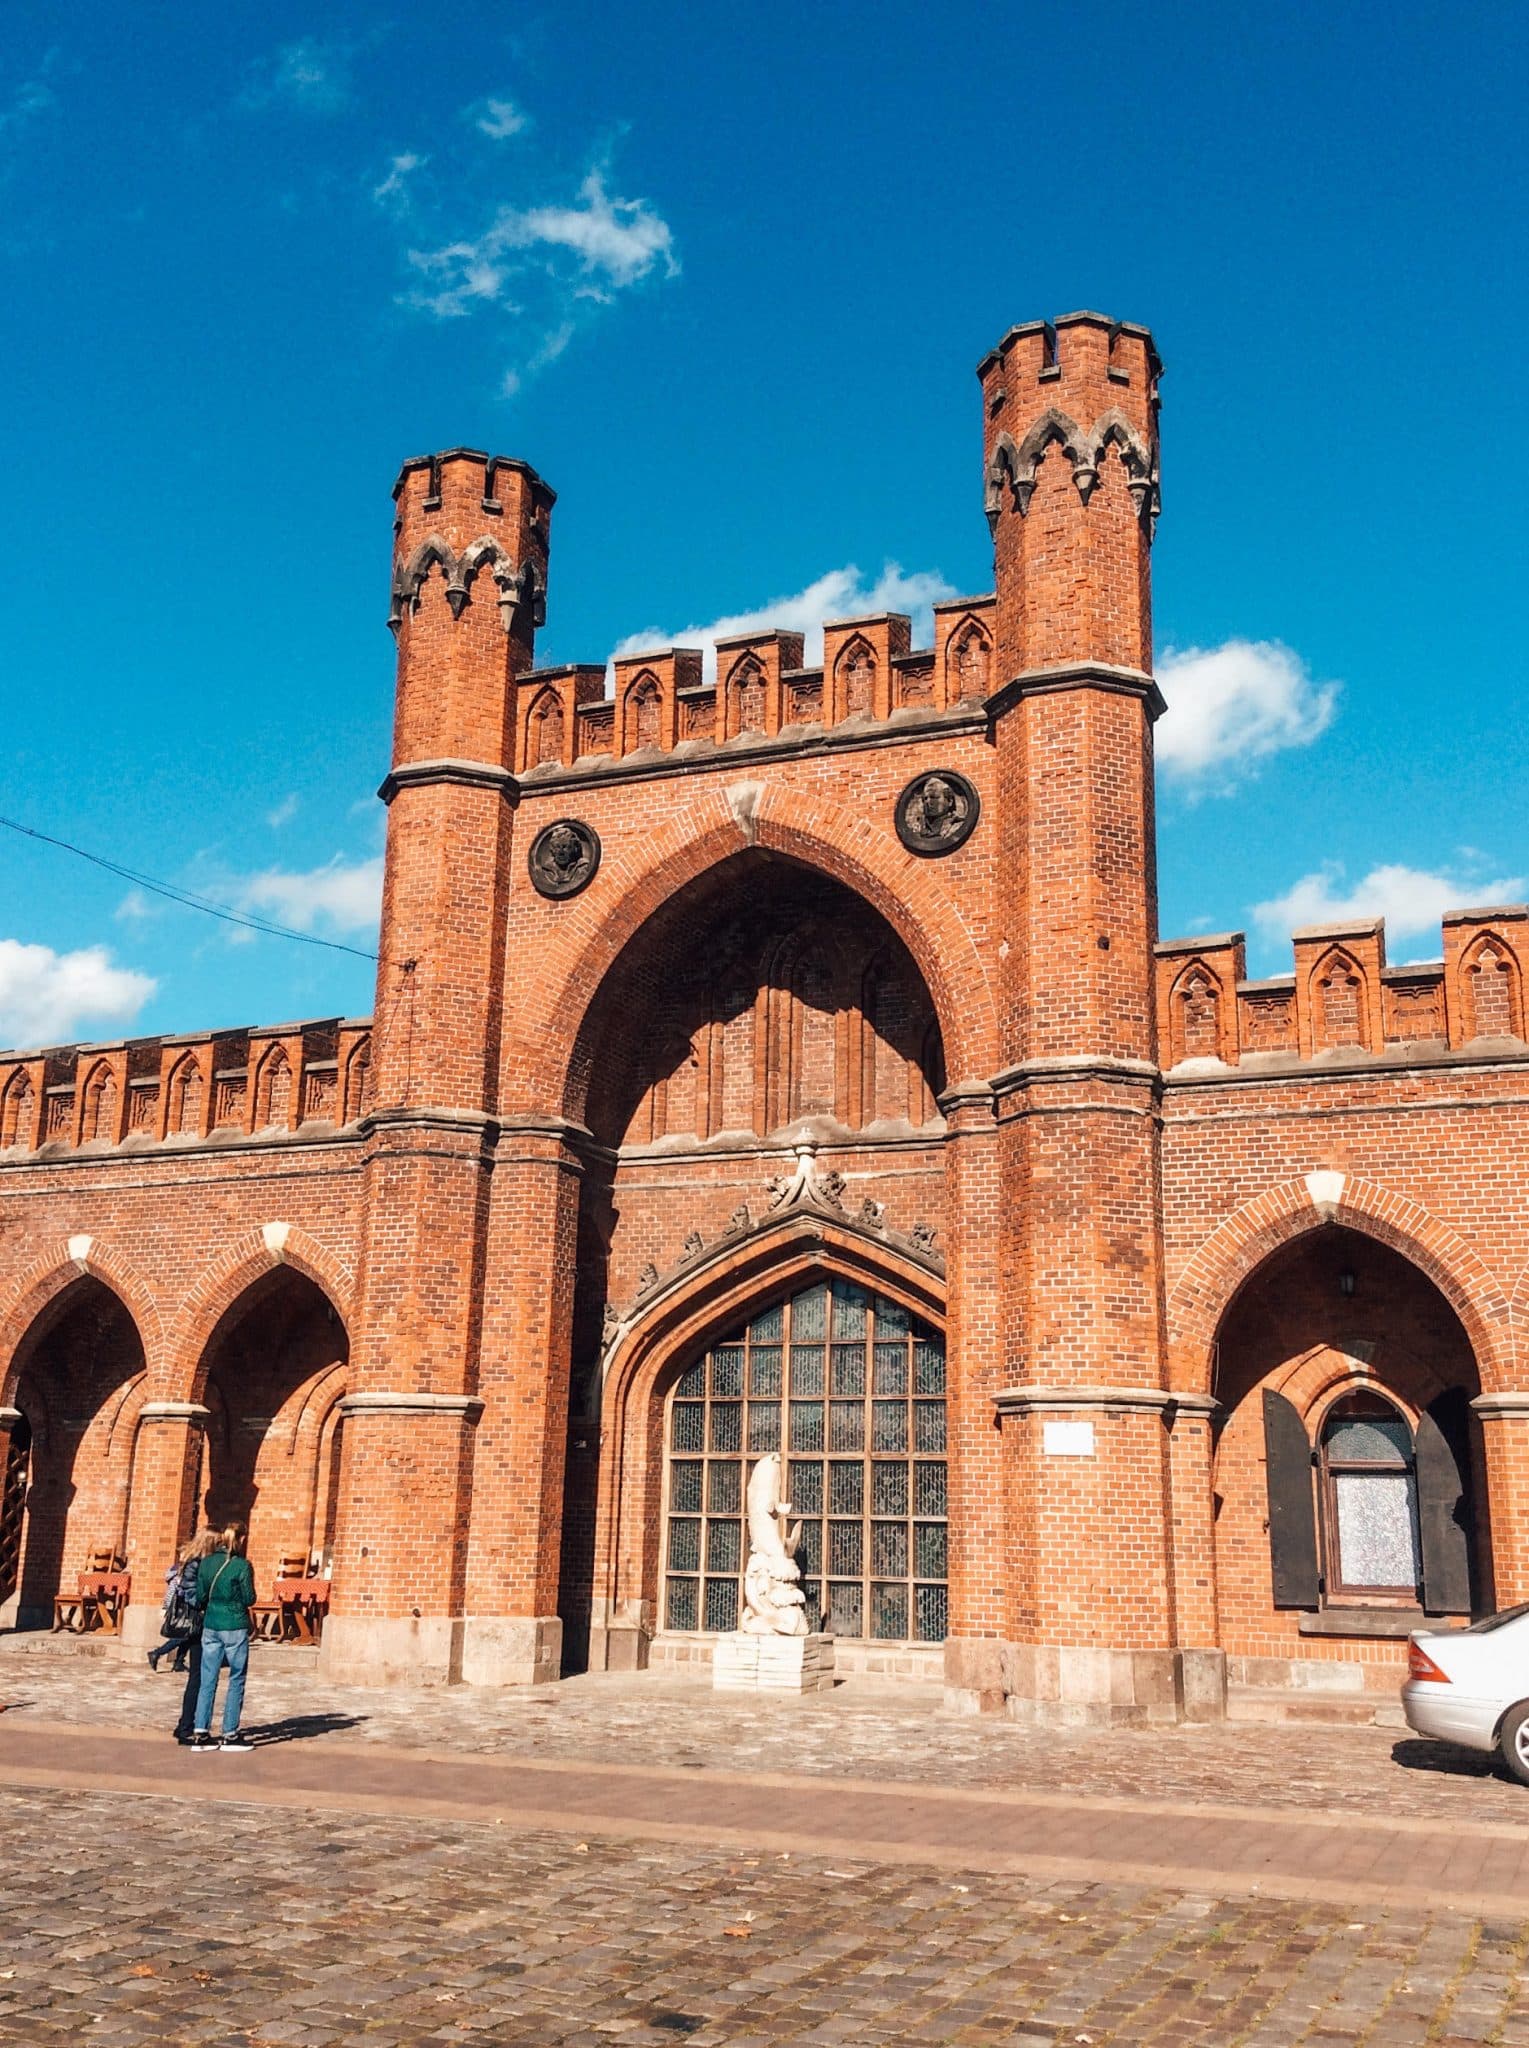 Gate in Kaliningrad, Russia